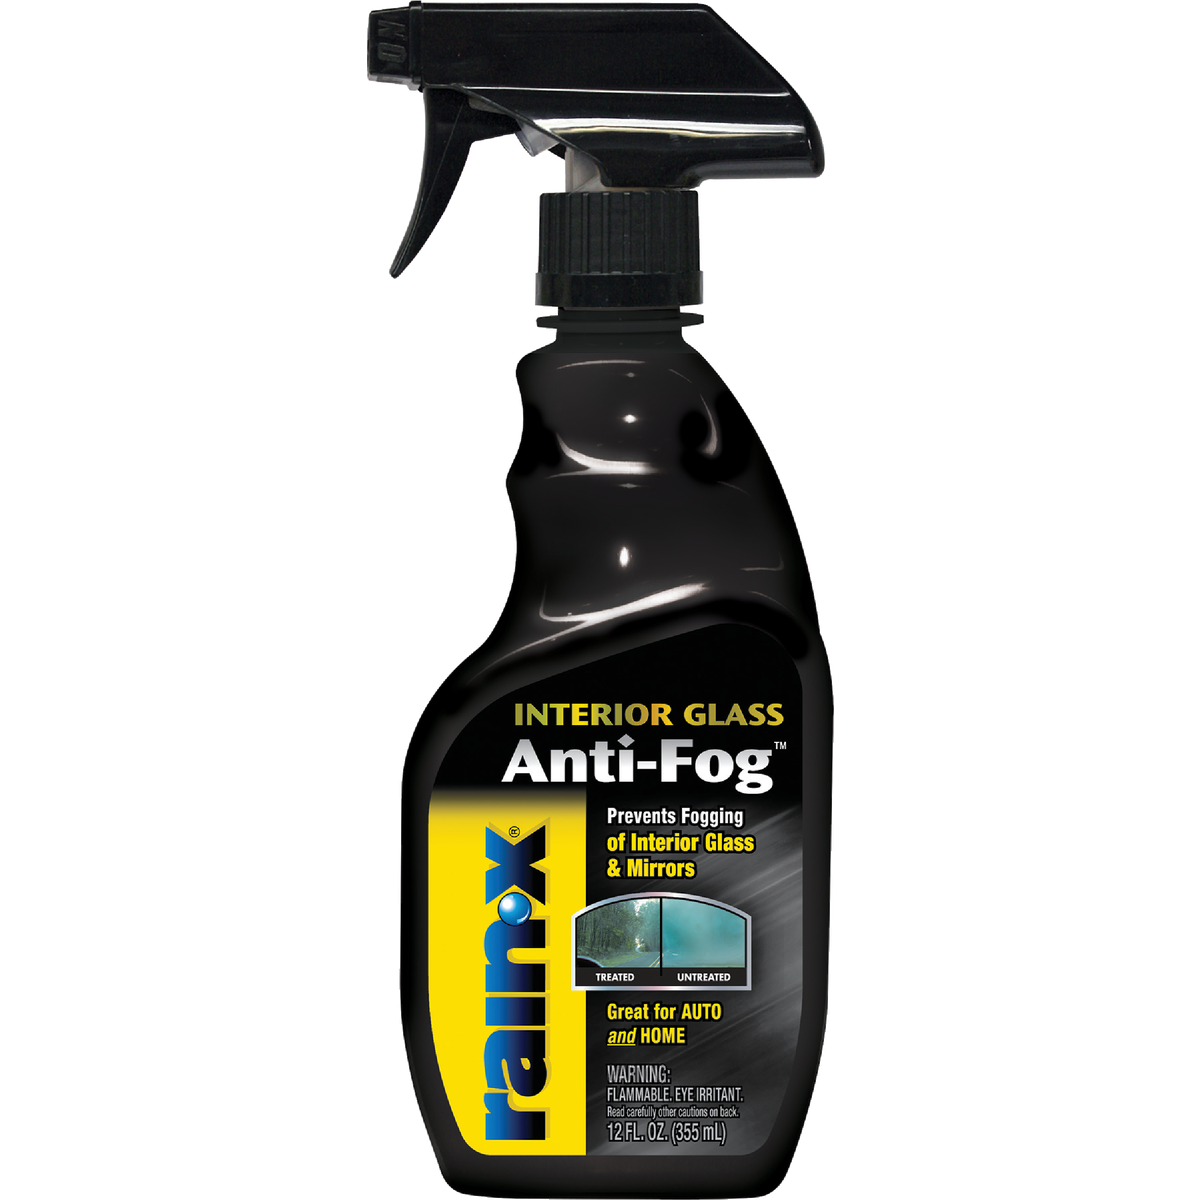 Anti-Fog Cleaner